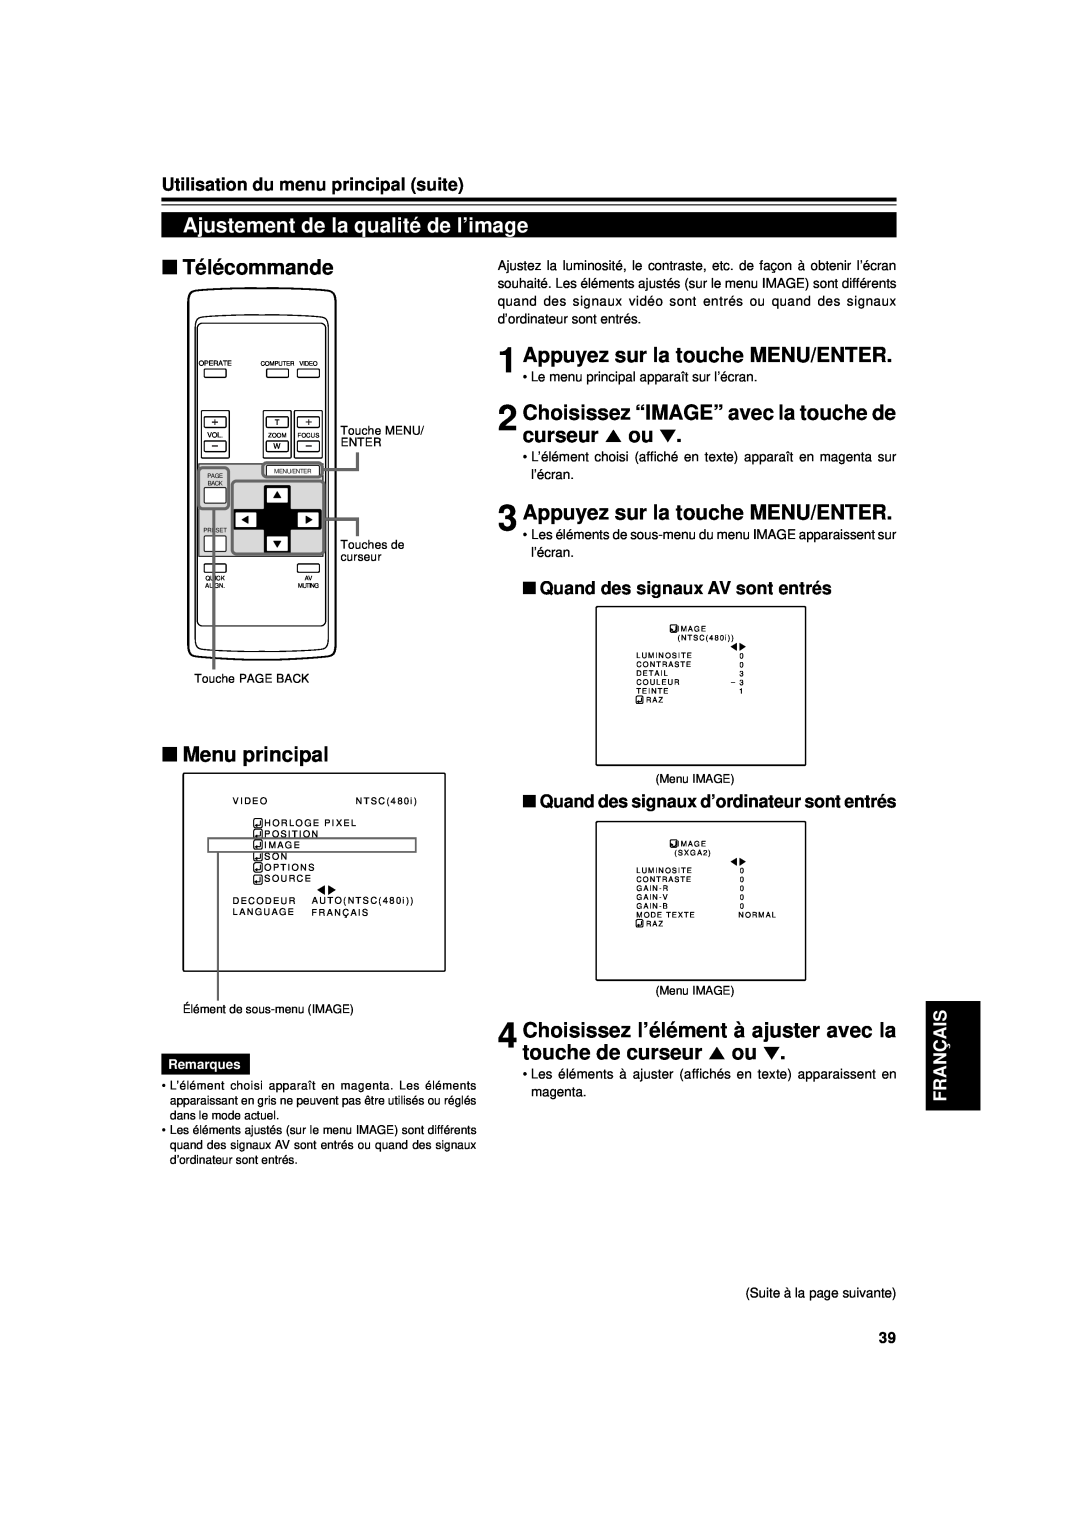 JVC DLA-G11U manual Ajustement de la qualité de l’image, Choisissez “IMAGE” avec la touche de curseur 5 ou, Télécommande 